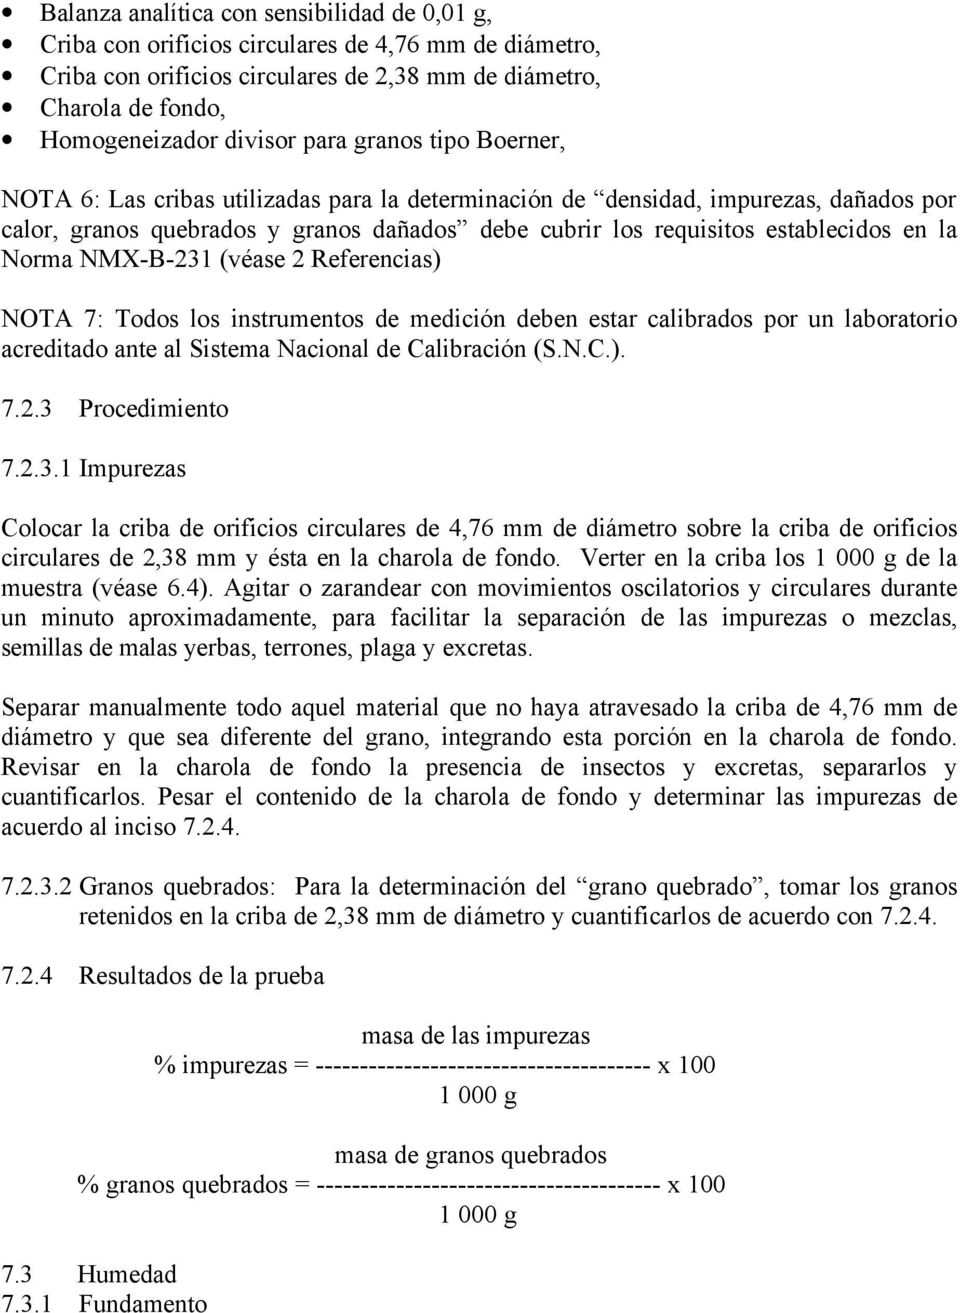 la Norma NMX-B-231 (véase 2 Referencias) NOTA 7: Todos los instrumentos de medición deben estar calibrados por un laboratorio acreditado ante al Sistema Nacional de Calibración (S.N.C.). 7.2.3 Procedimiento 7.